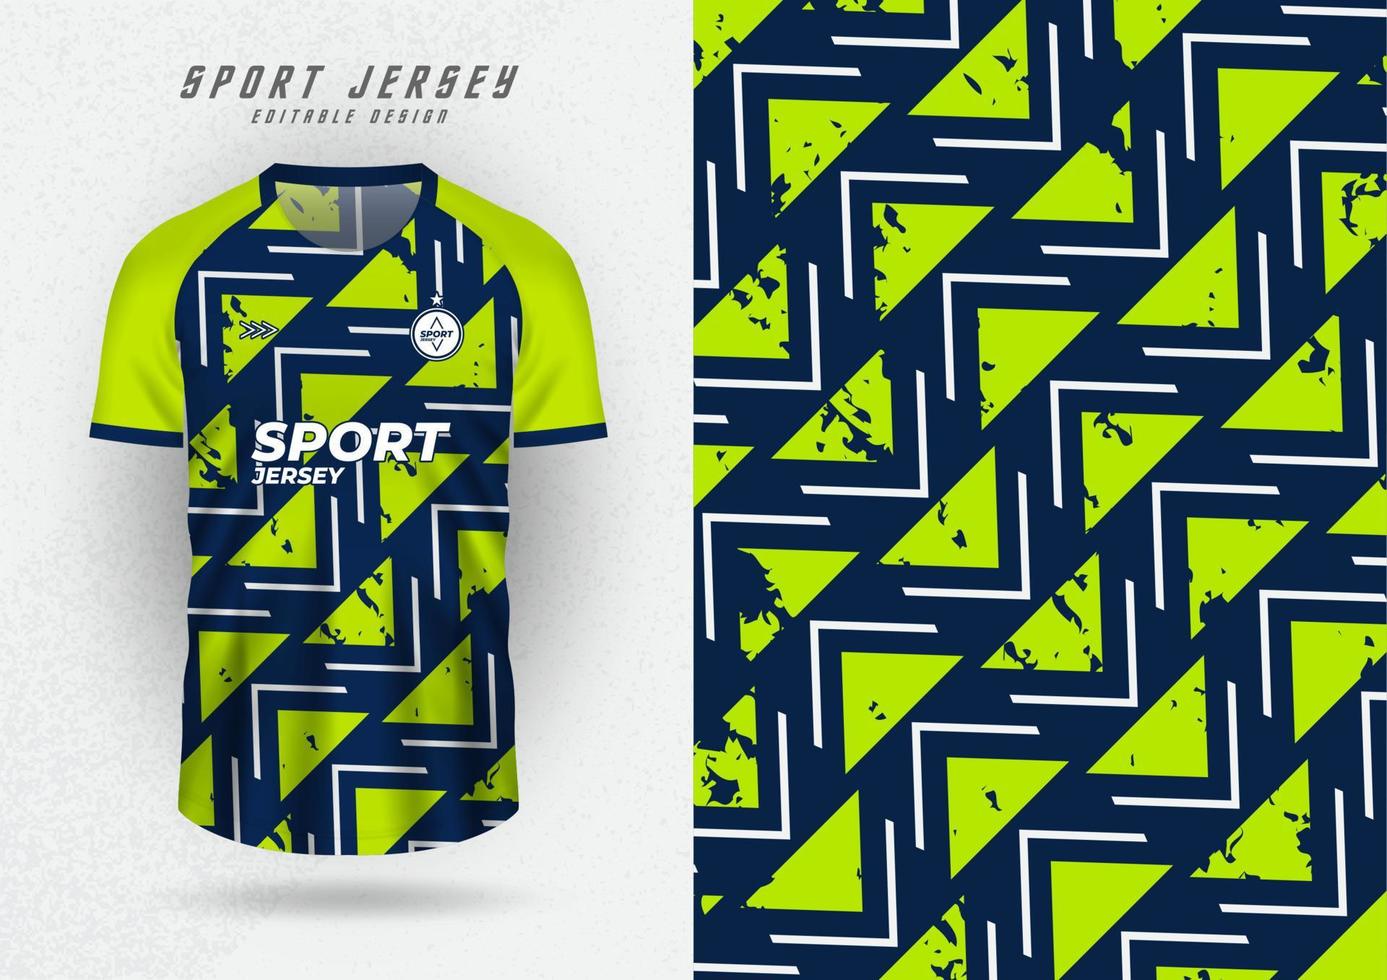 achtergrondmodel voor sporttrui, jersey, hardloopshirt, citroendriehoekpatroon. vector